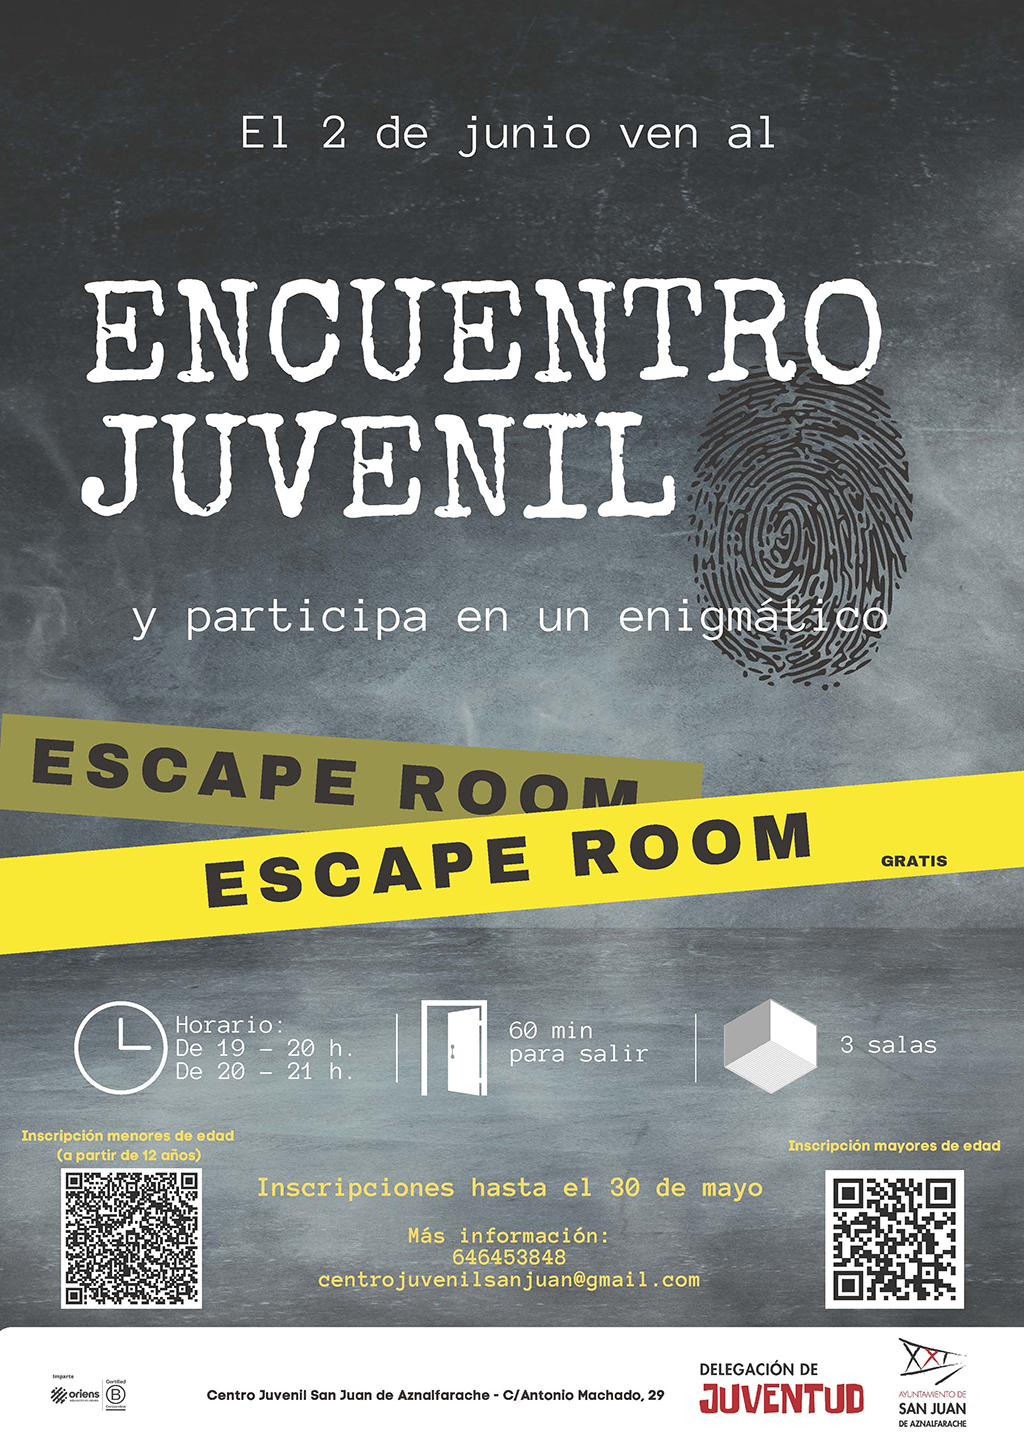 San Juan invita a los jóvenes a participar en un misterioso Escape Room